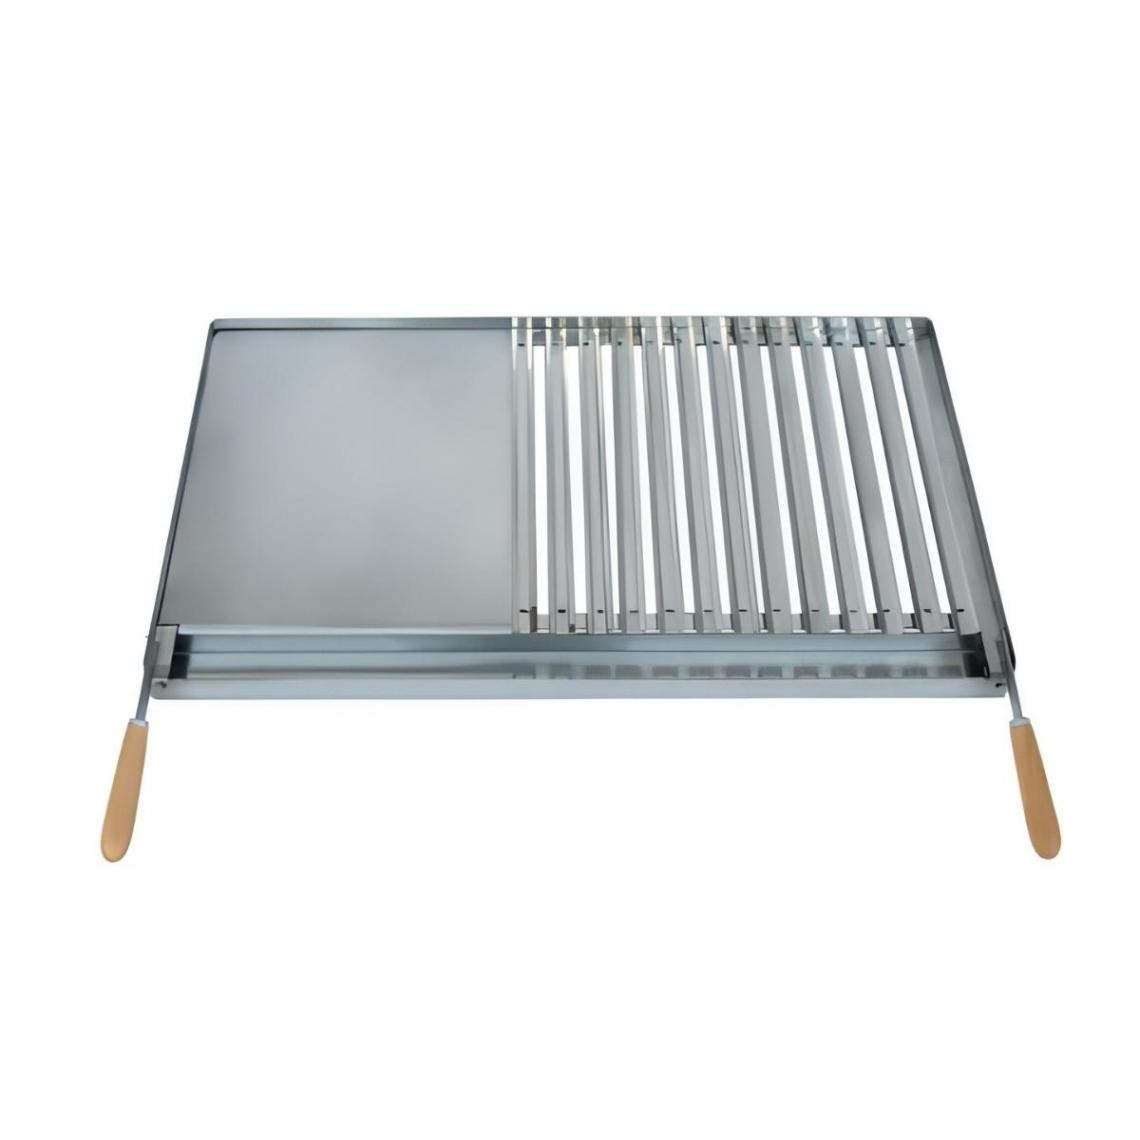 Visiodirect - Grille/Planche avec récupérateur de graisse en Inox coloris Gris - 49 x 41 cm - Accessoires barbecue